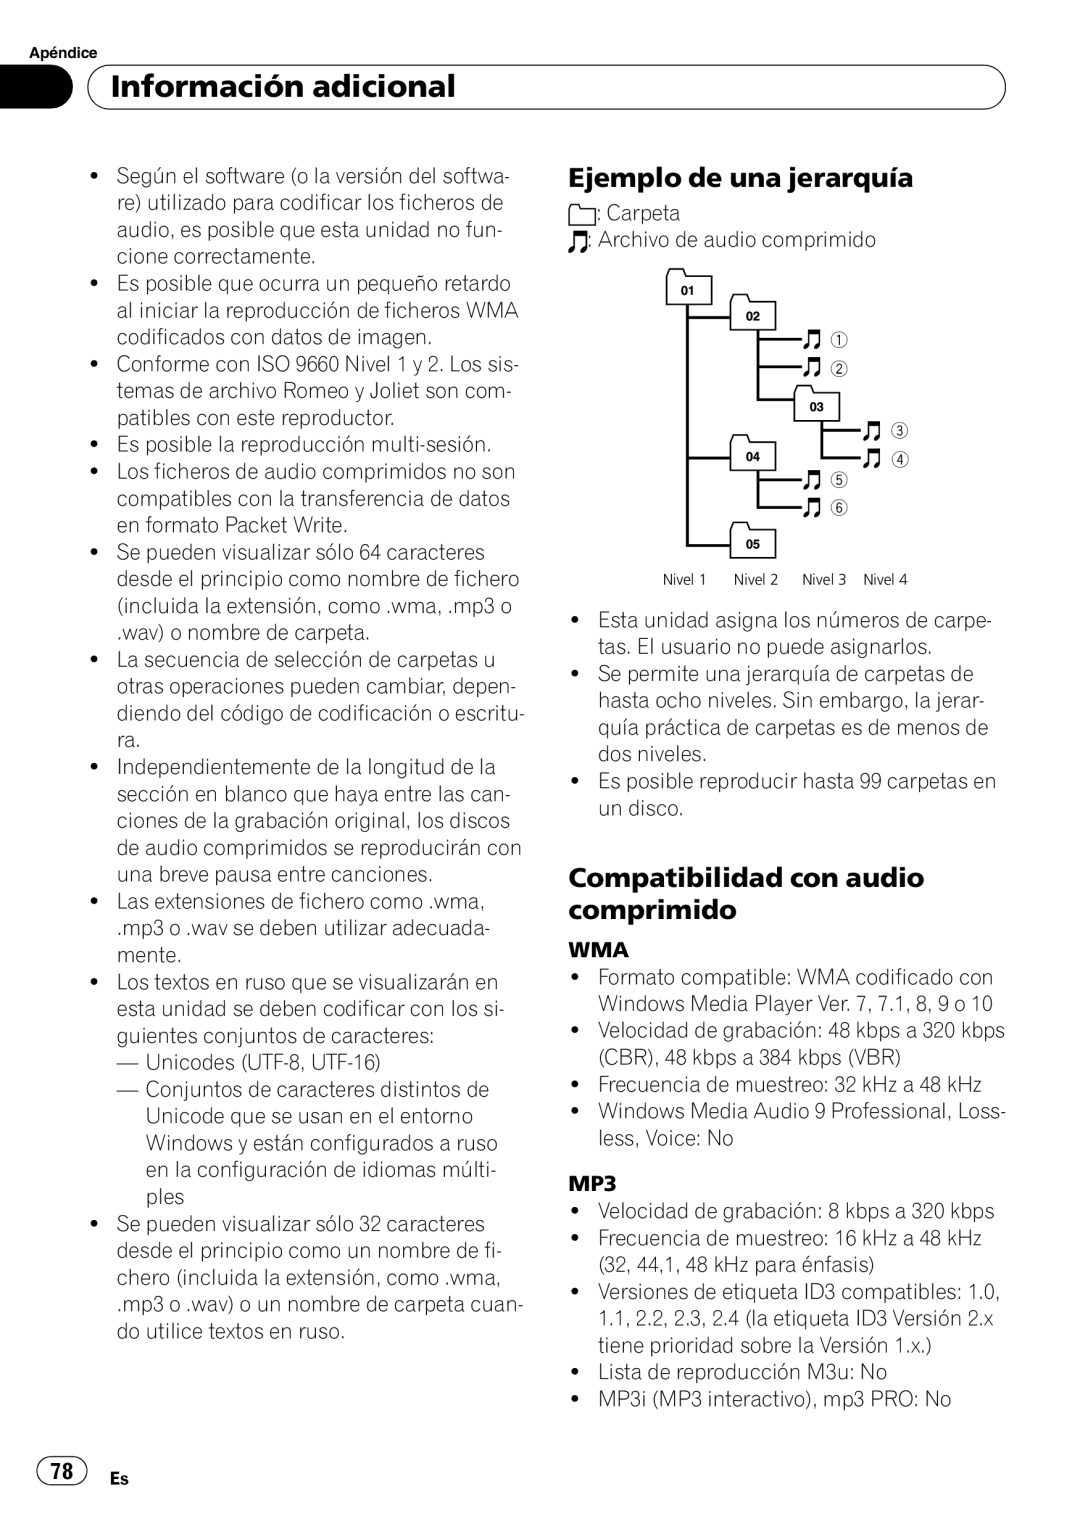 Pioneer DEH-P4900IB operation manual Ejemplo de una jerarquía, Compatibilidad con audio comprimido, Información adicional 